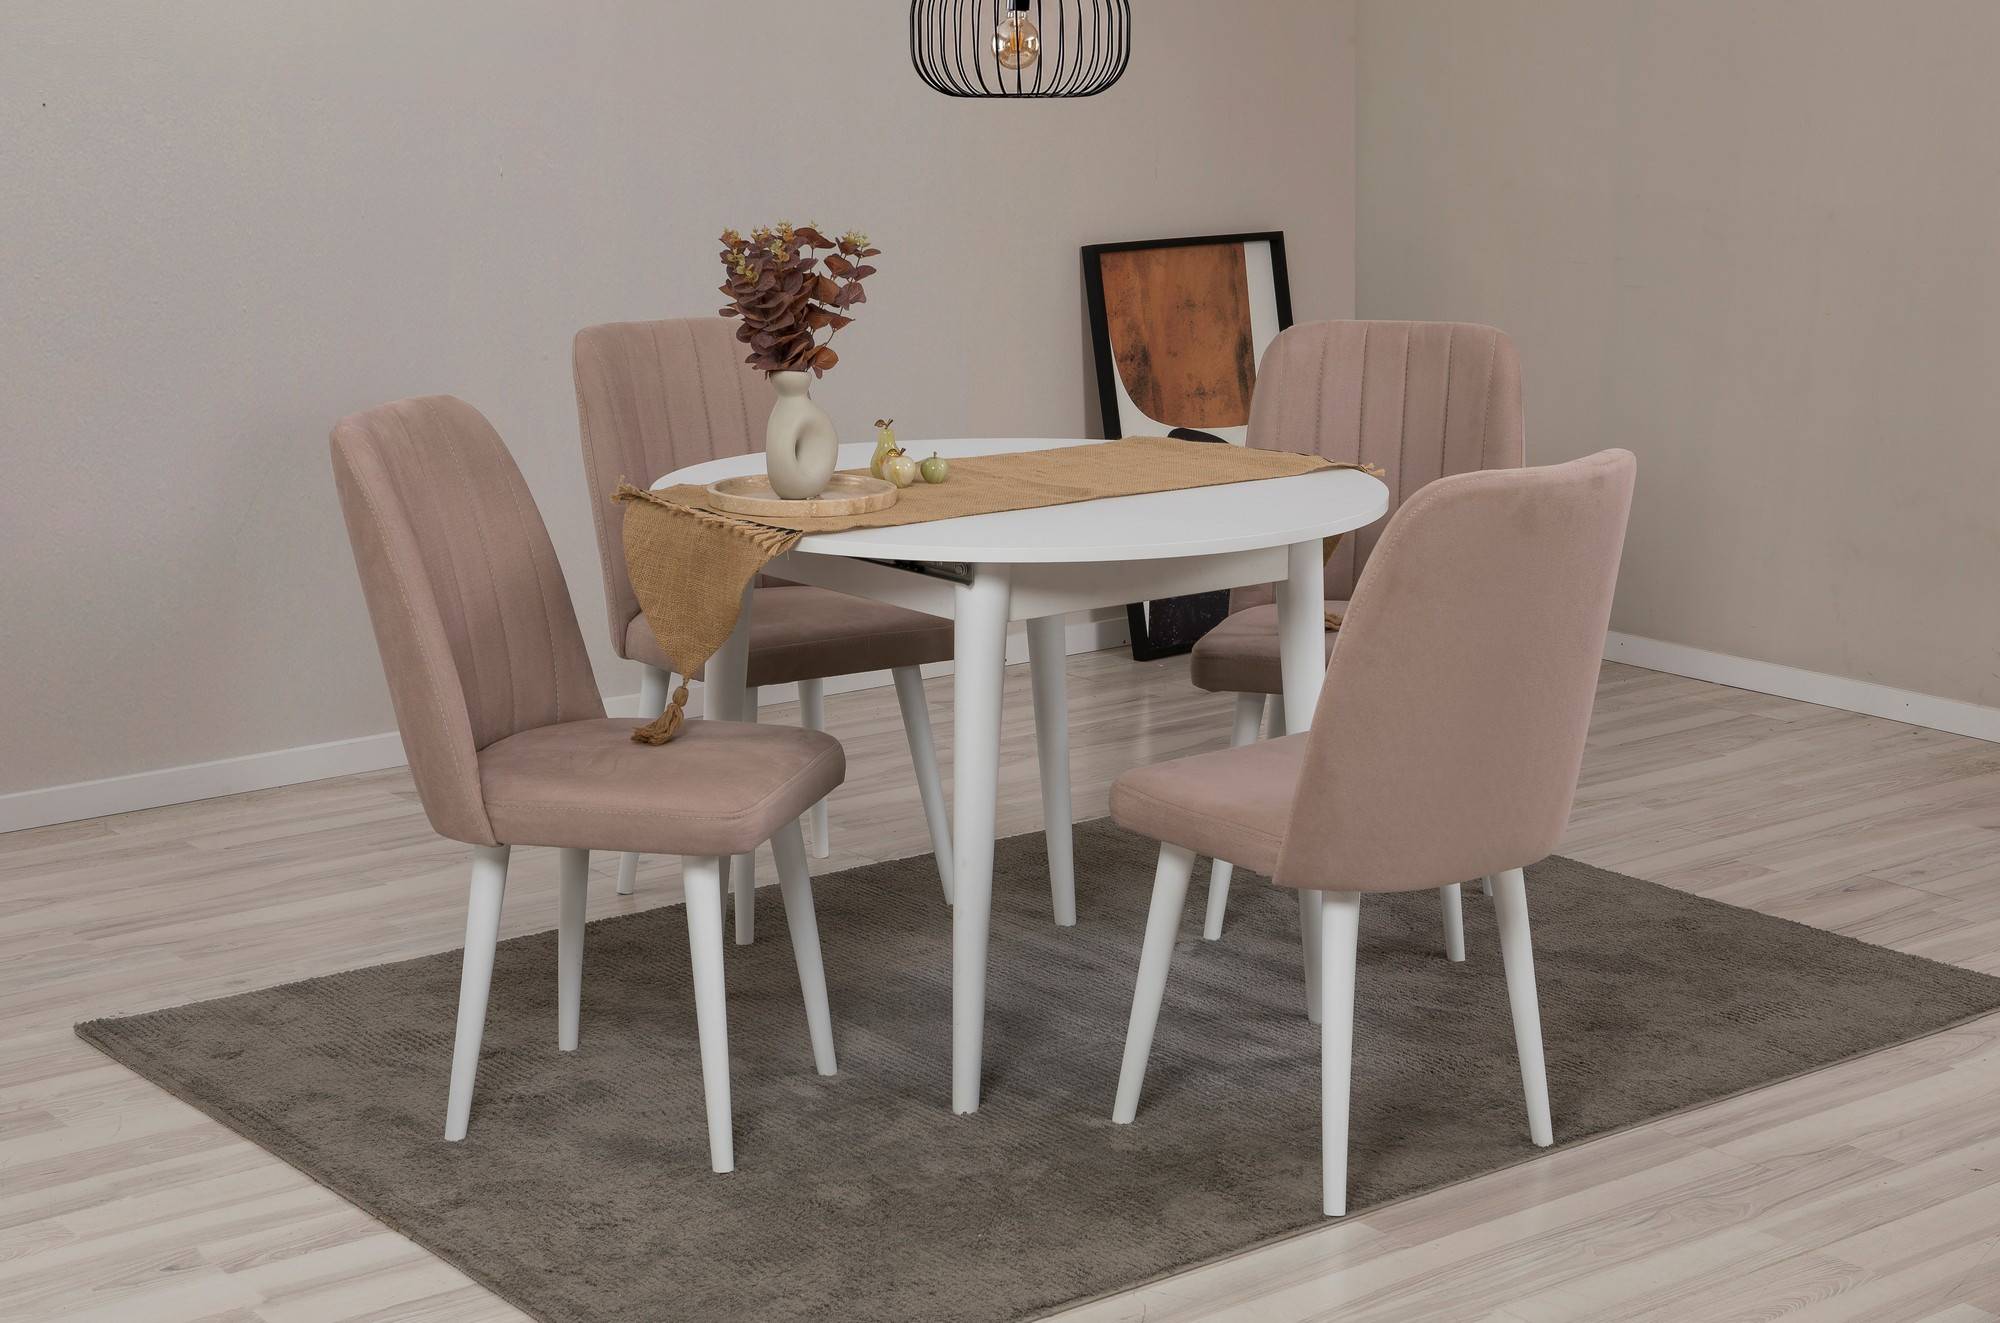 Conjunto de mesa redonda extensible y 4 sillas Malva de madera blanca y tela taupe.